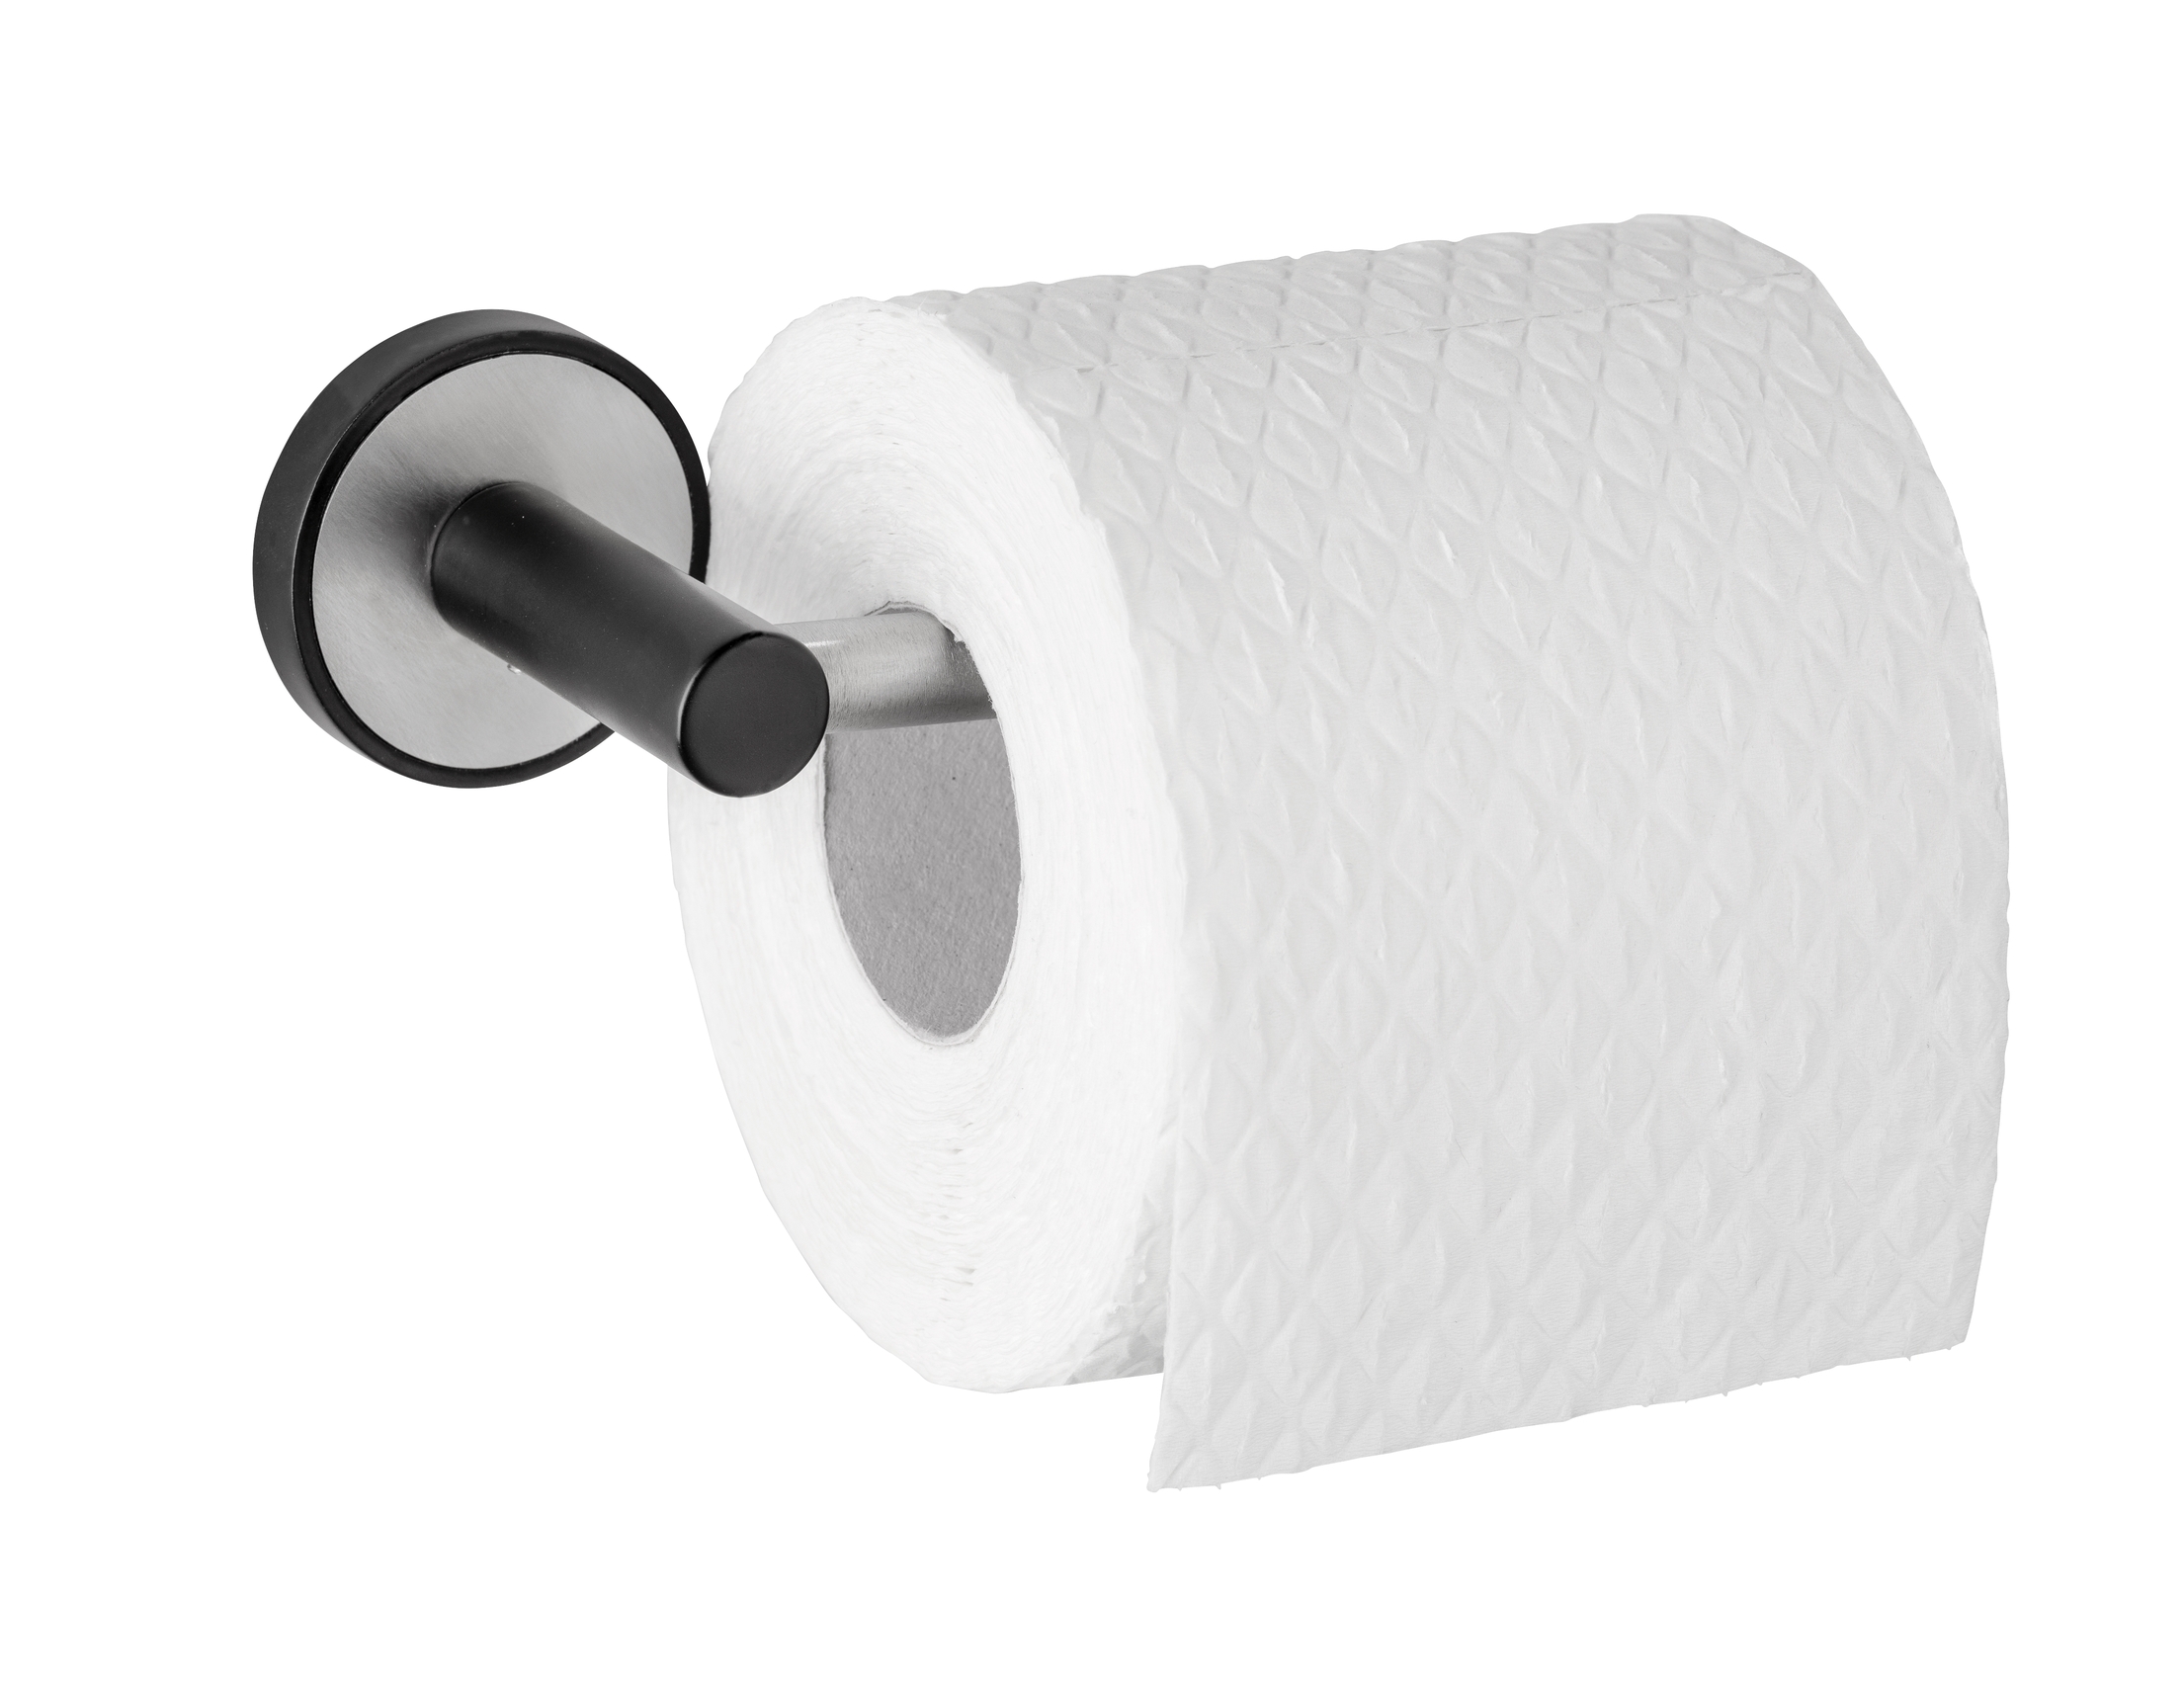 Wenko UV-Loc® Toilettenpapierhalter Udine 17 x 5 x 6 cm, ohne Deckel, silber matt/schwarz. Befestigen ohne bohren